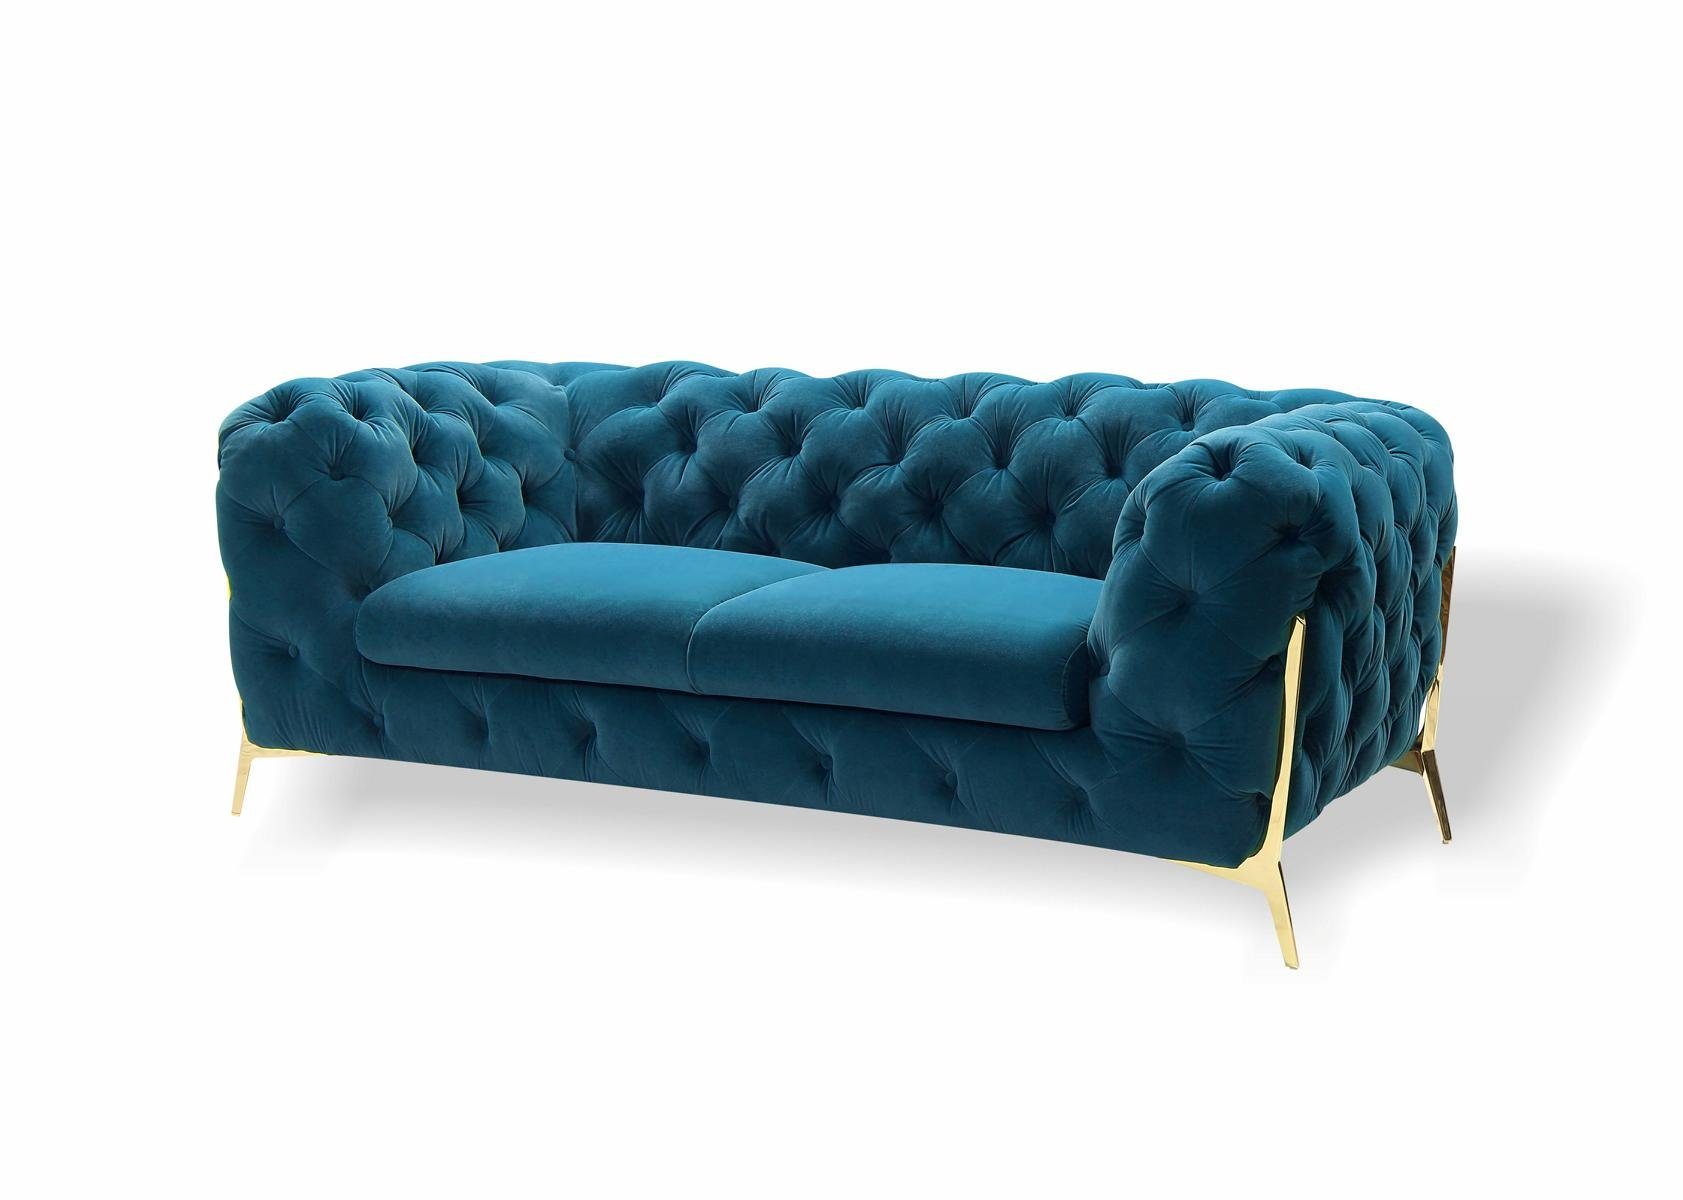 JVmoebel 2-Sitzer Sofa 2 Sitzer Klassische Chesterfield Sofas Couchen Polster, Made in Europa Blau